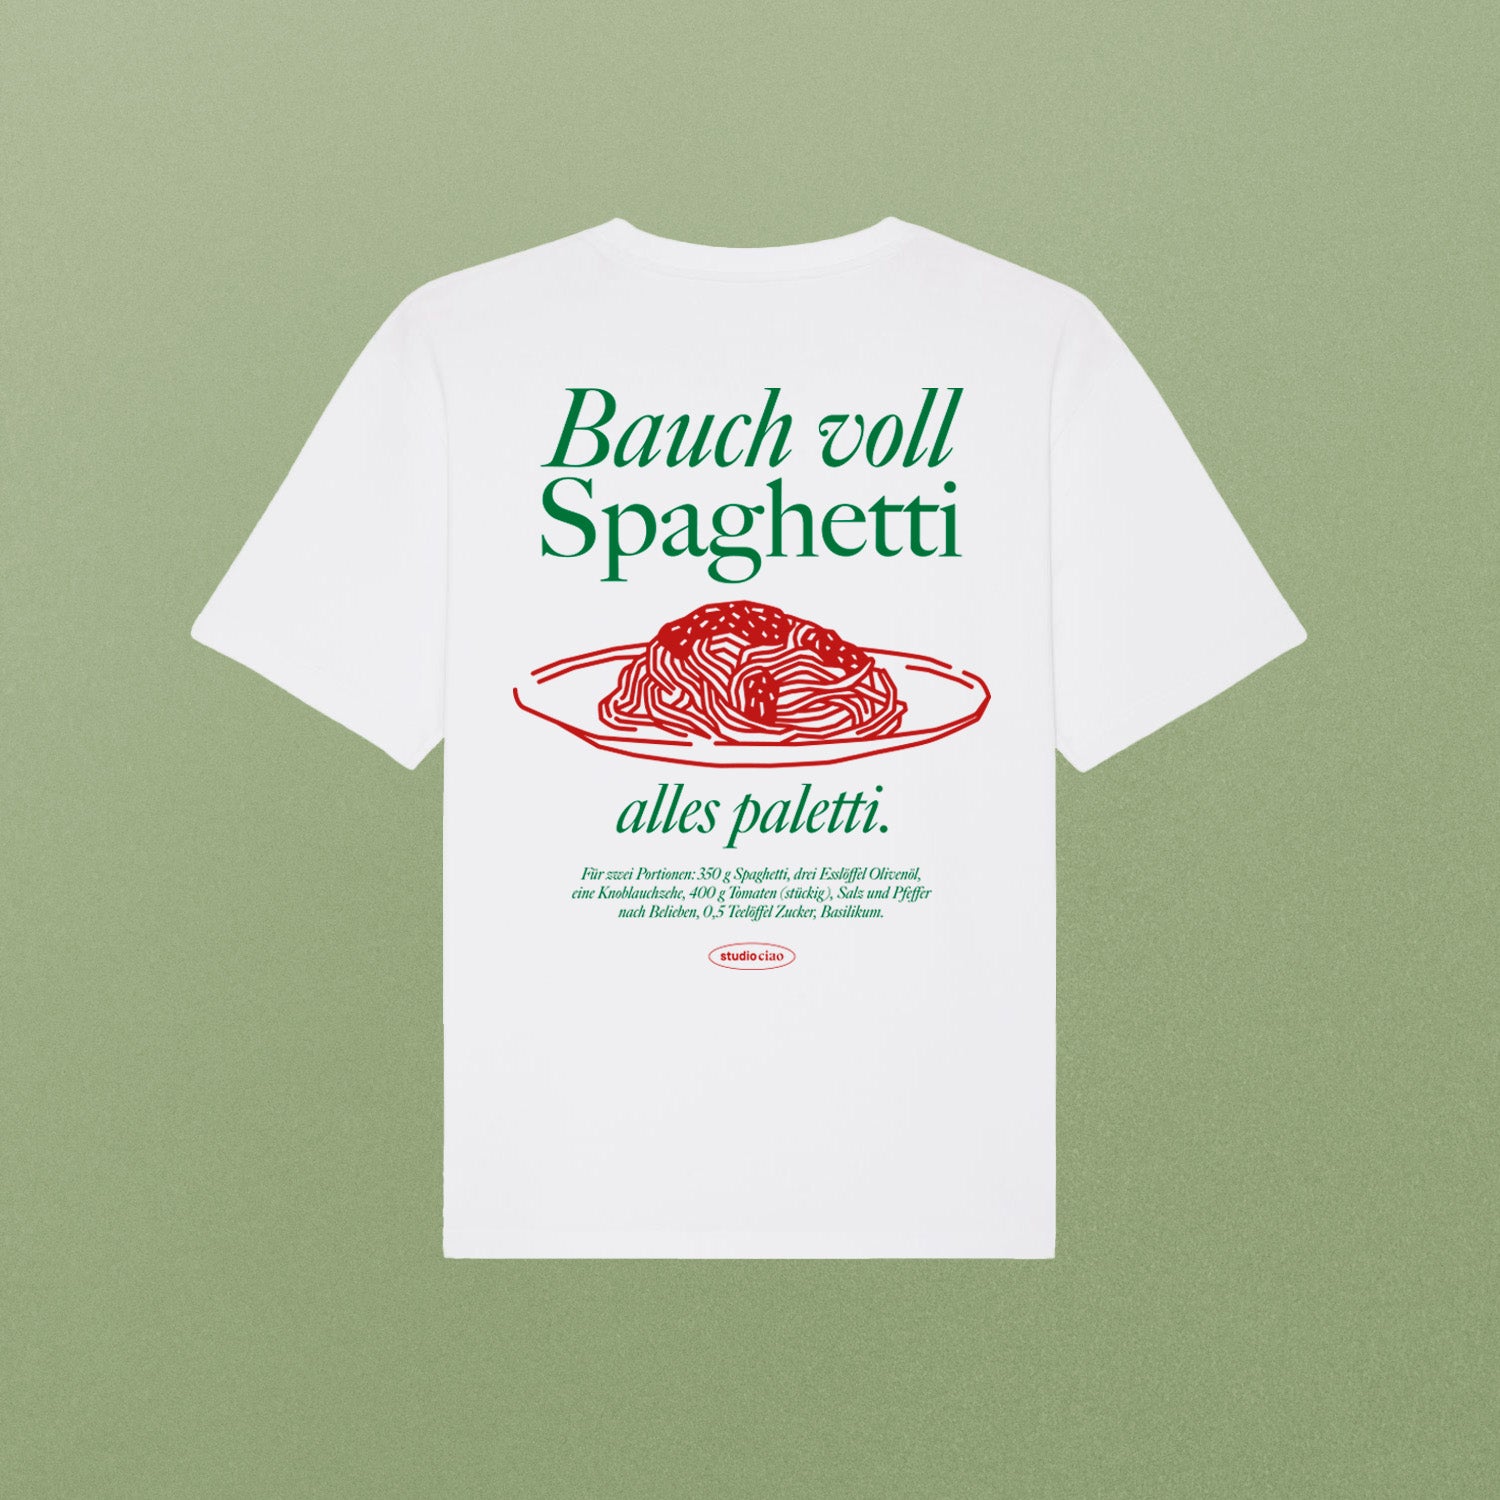 "Bauch voll Spaghetti, alles paletti" T-Shirt (unisex)